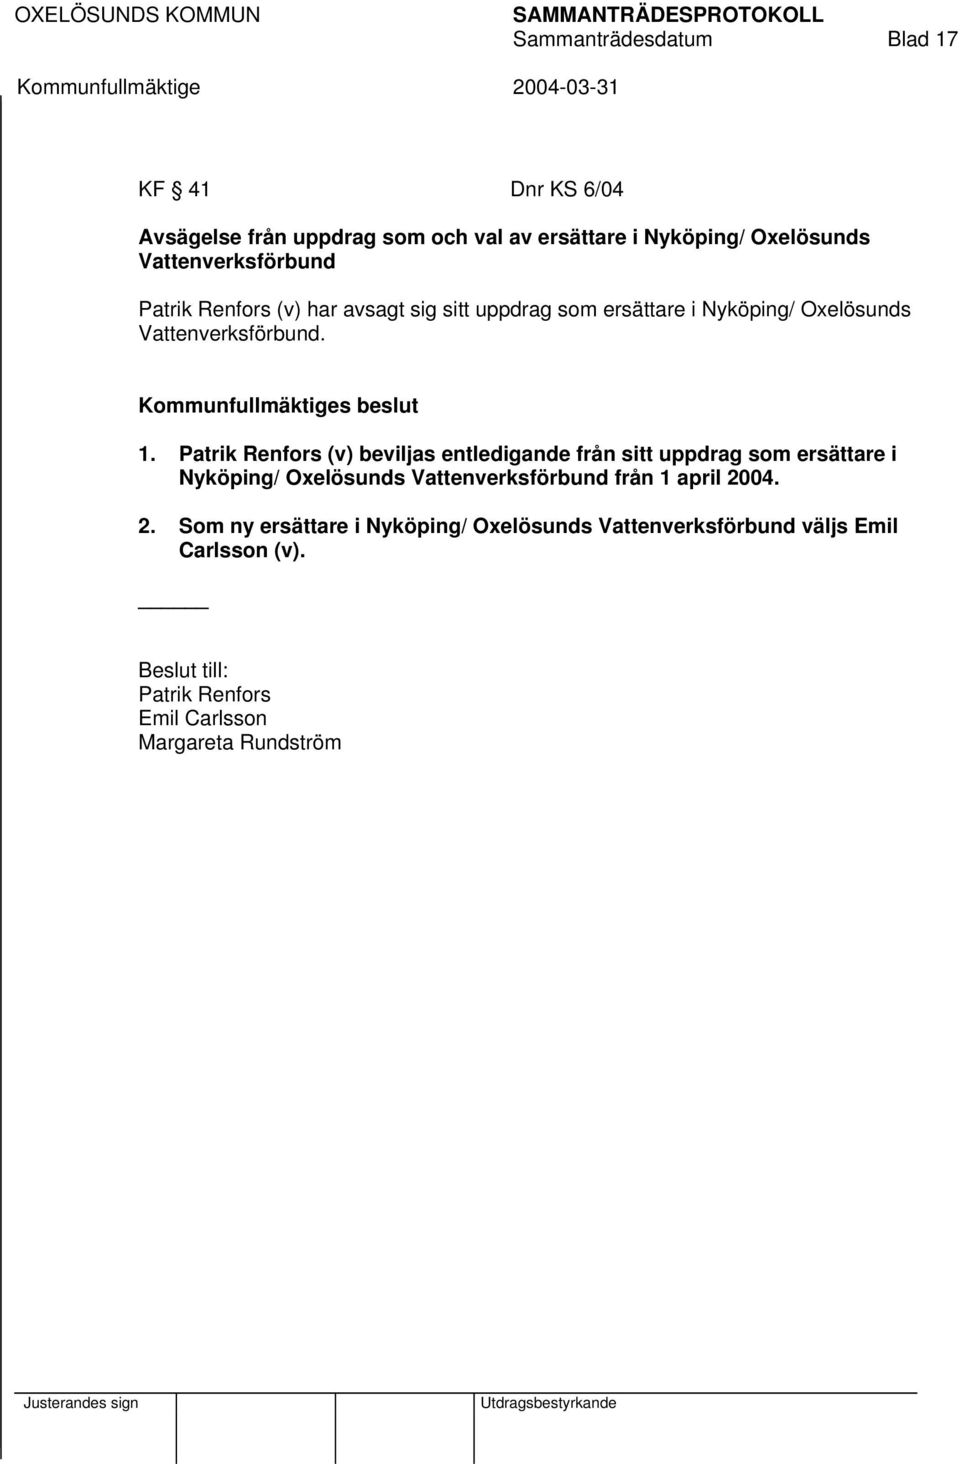 Patrik Renfors (v) beviljas entledigande från sitt uppdrag som ersättare i Nyköping/ Oxelösunds Vattenverksförbund från 1 april